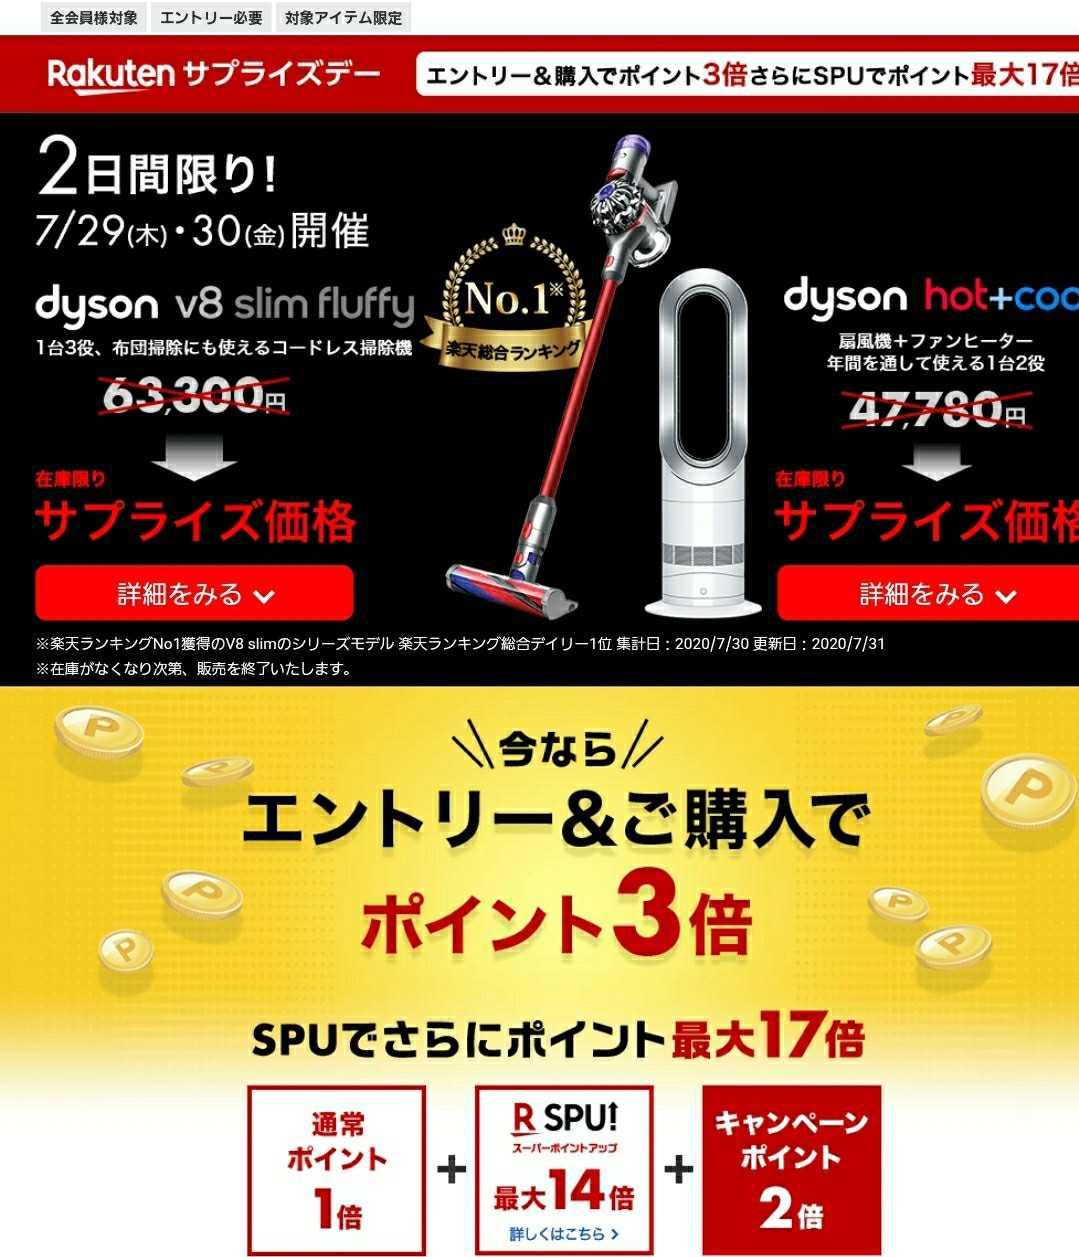 【dyson】ダイソン掃除機&扇風機が最安値！楽天サプライズデー！ | サラリーマン主夫の子育て👶買い物👜日記🌈 - 楽天ブログ